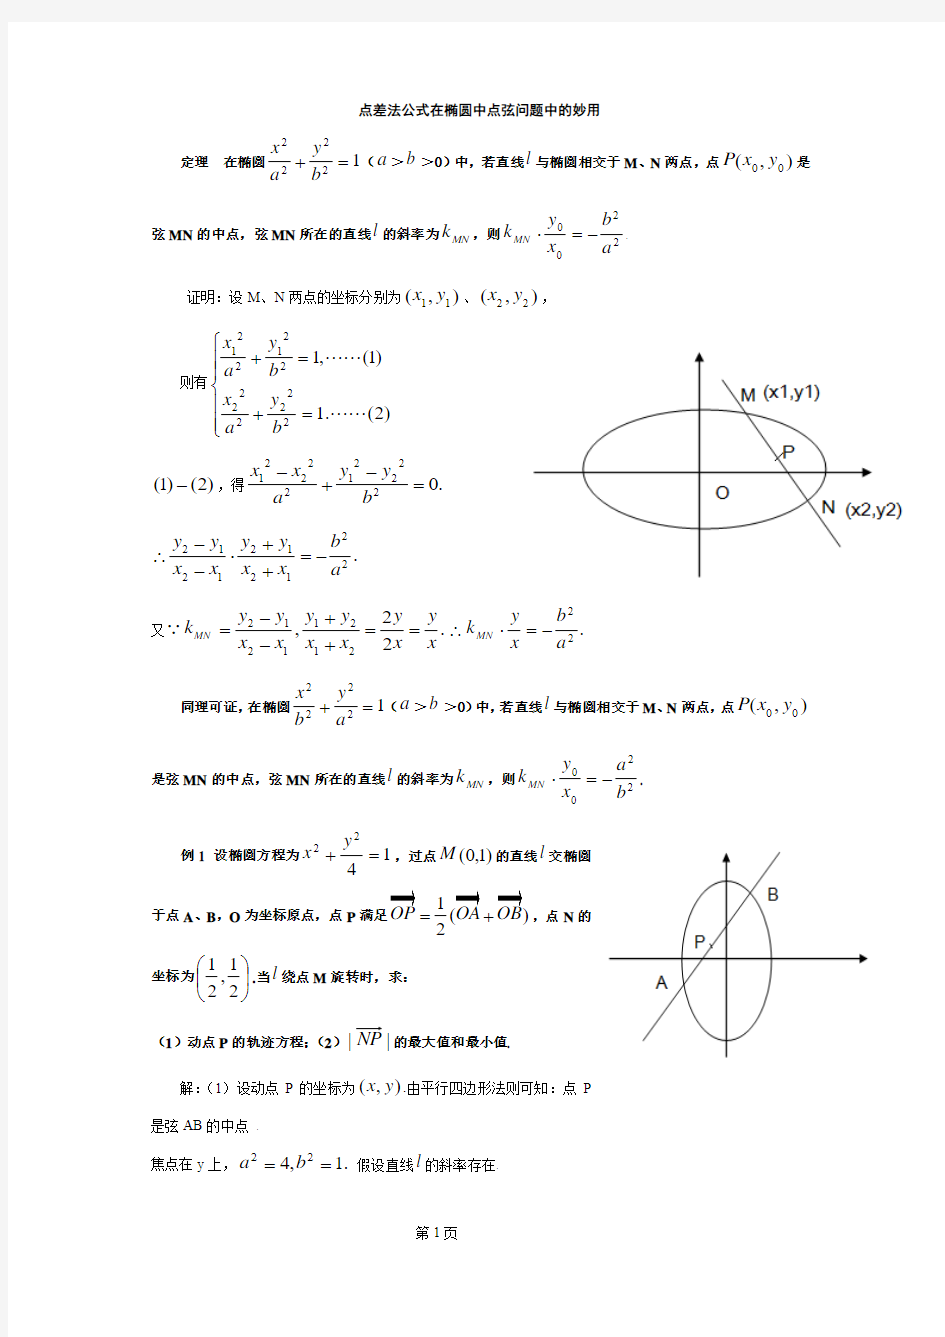 点差法公式在椭圆中点弦问题中的妙用